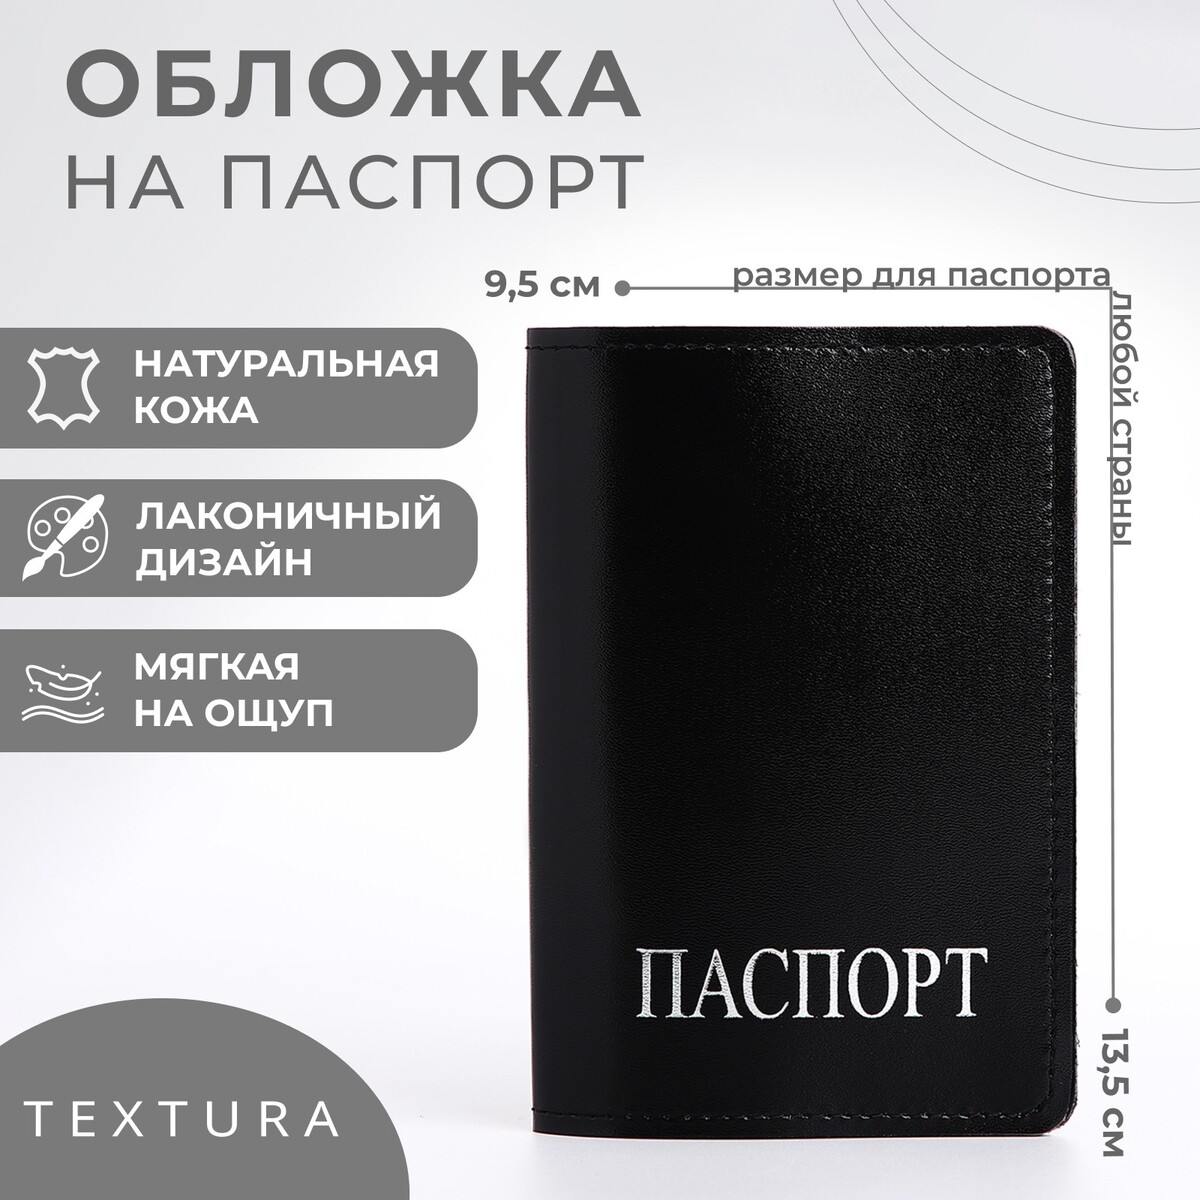 Обложка для паспорта textura, цвет черный обложка для паспорта textura молочный